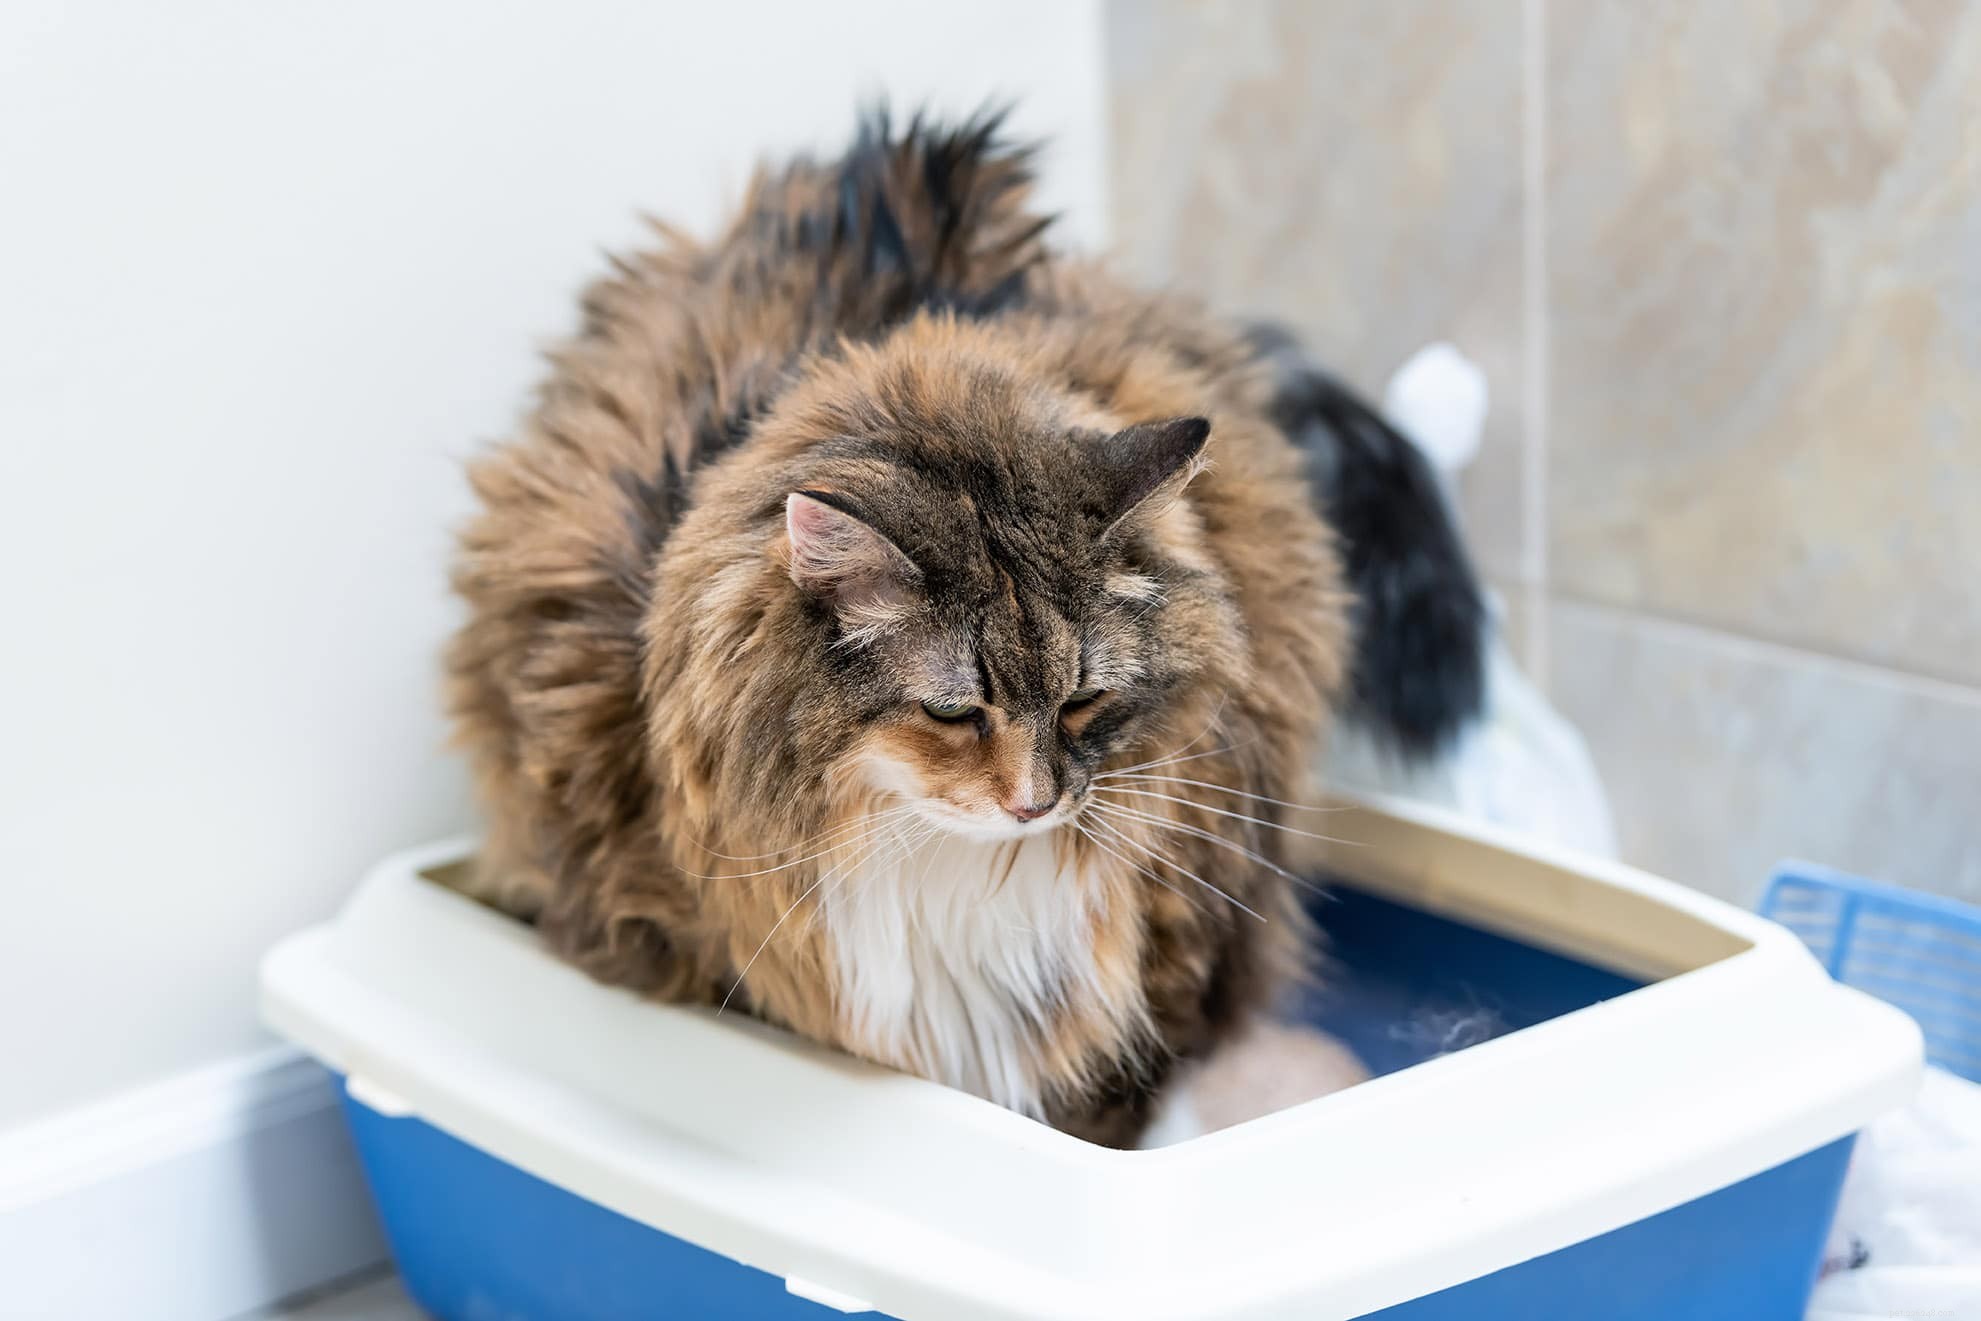 내가 화장실을 사용할 때 고양이가 쓰레기통을 사용하는 이유는 무엇입니까?